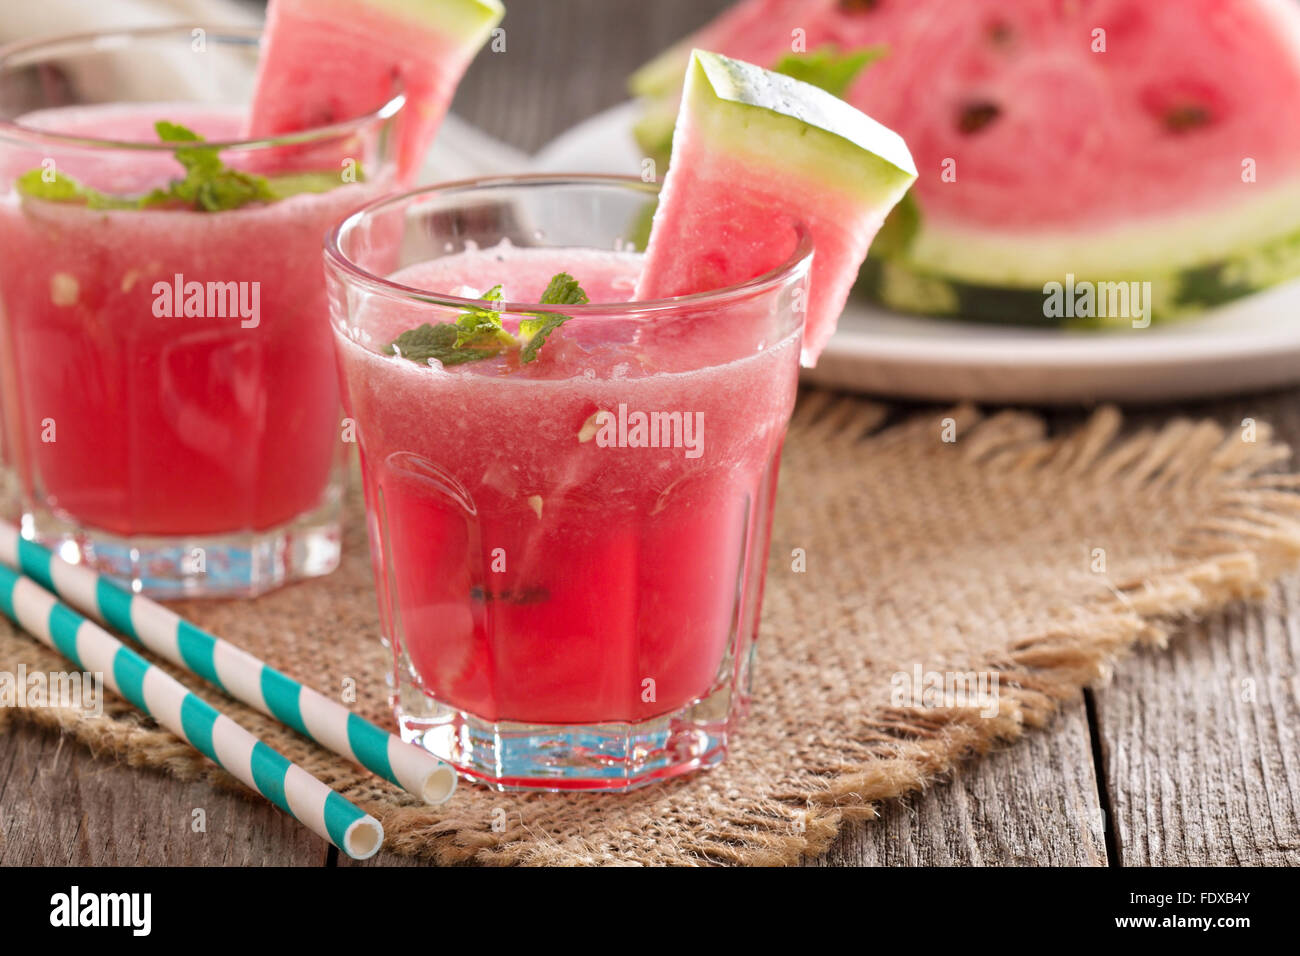 Wassermelone trinken in Gläsern mit Scheiben Wassermelone Stockfotografie -  Alamy